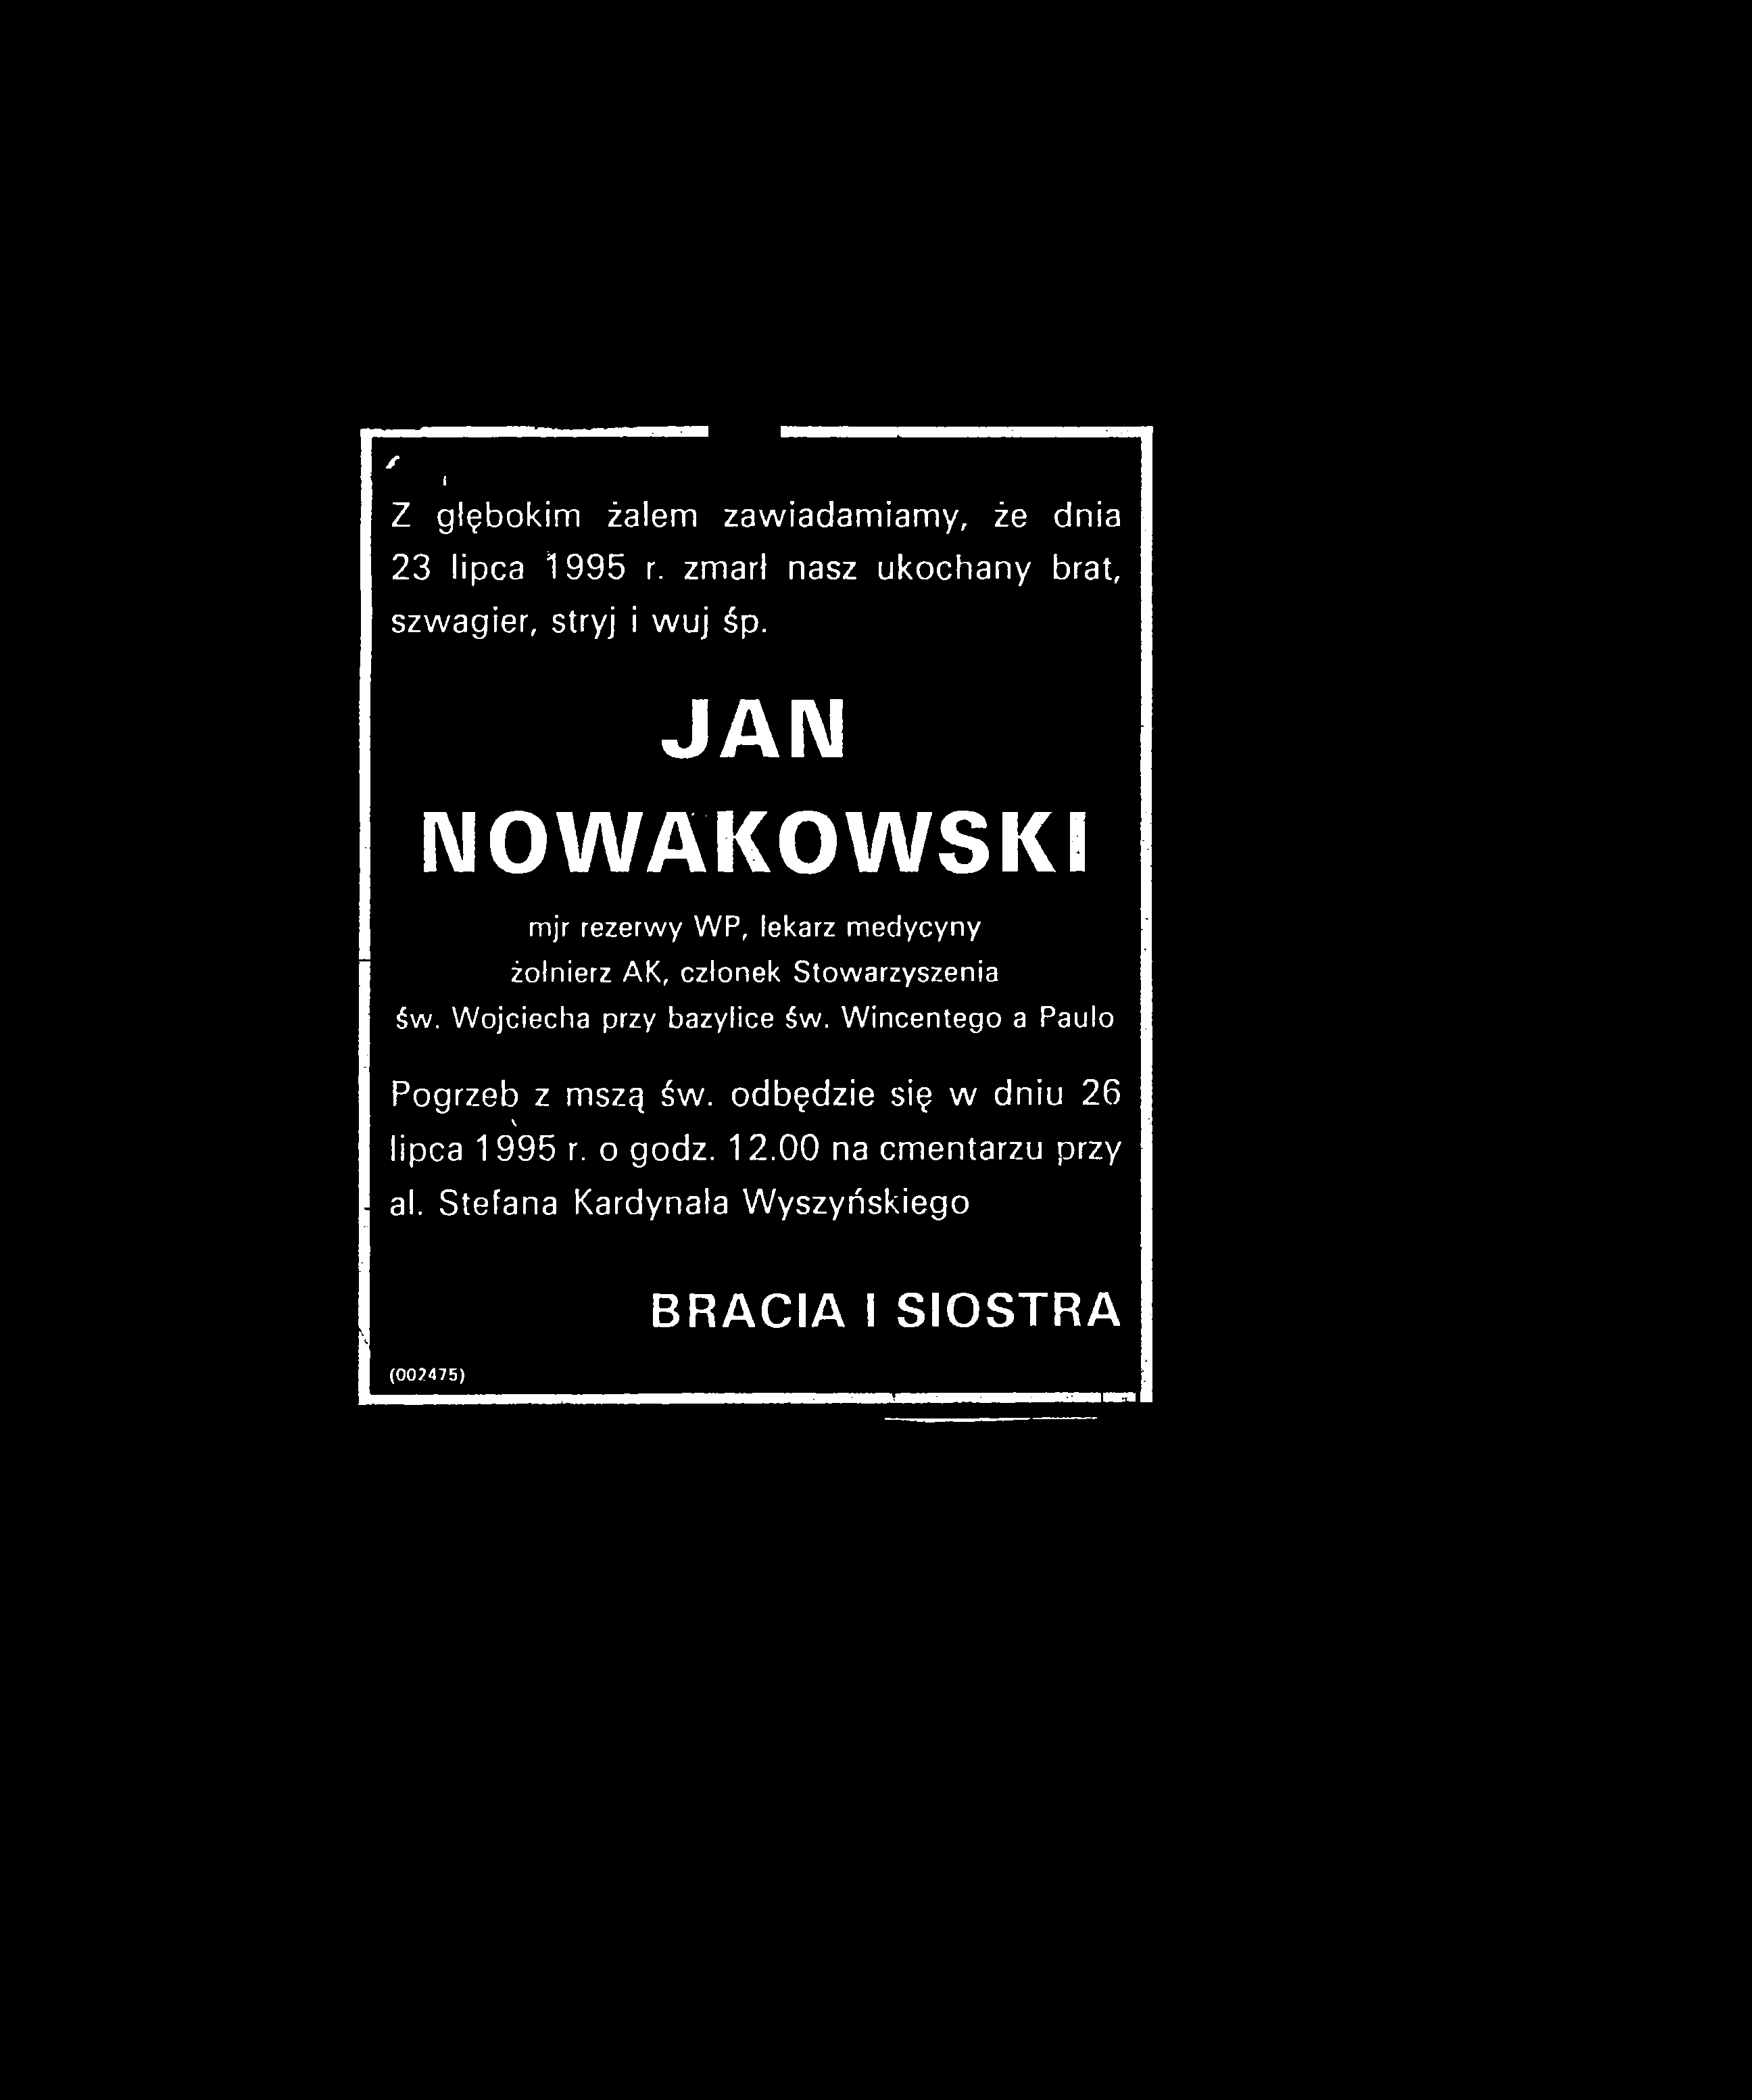 JAIM NOWAKOWSKI mjr rezerwy WP, lekarz m edycyny żołnierz AK, członek Stowarzyszenia św.